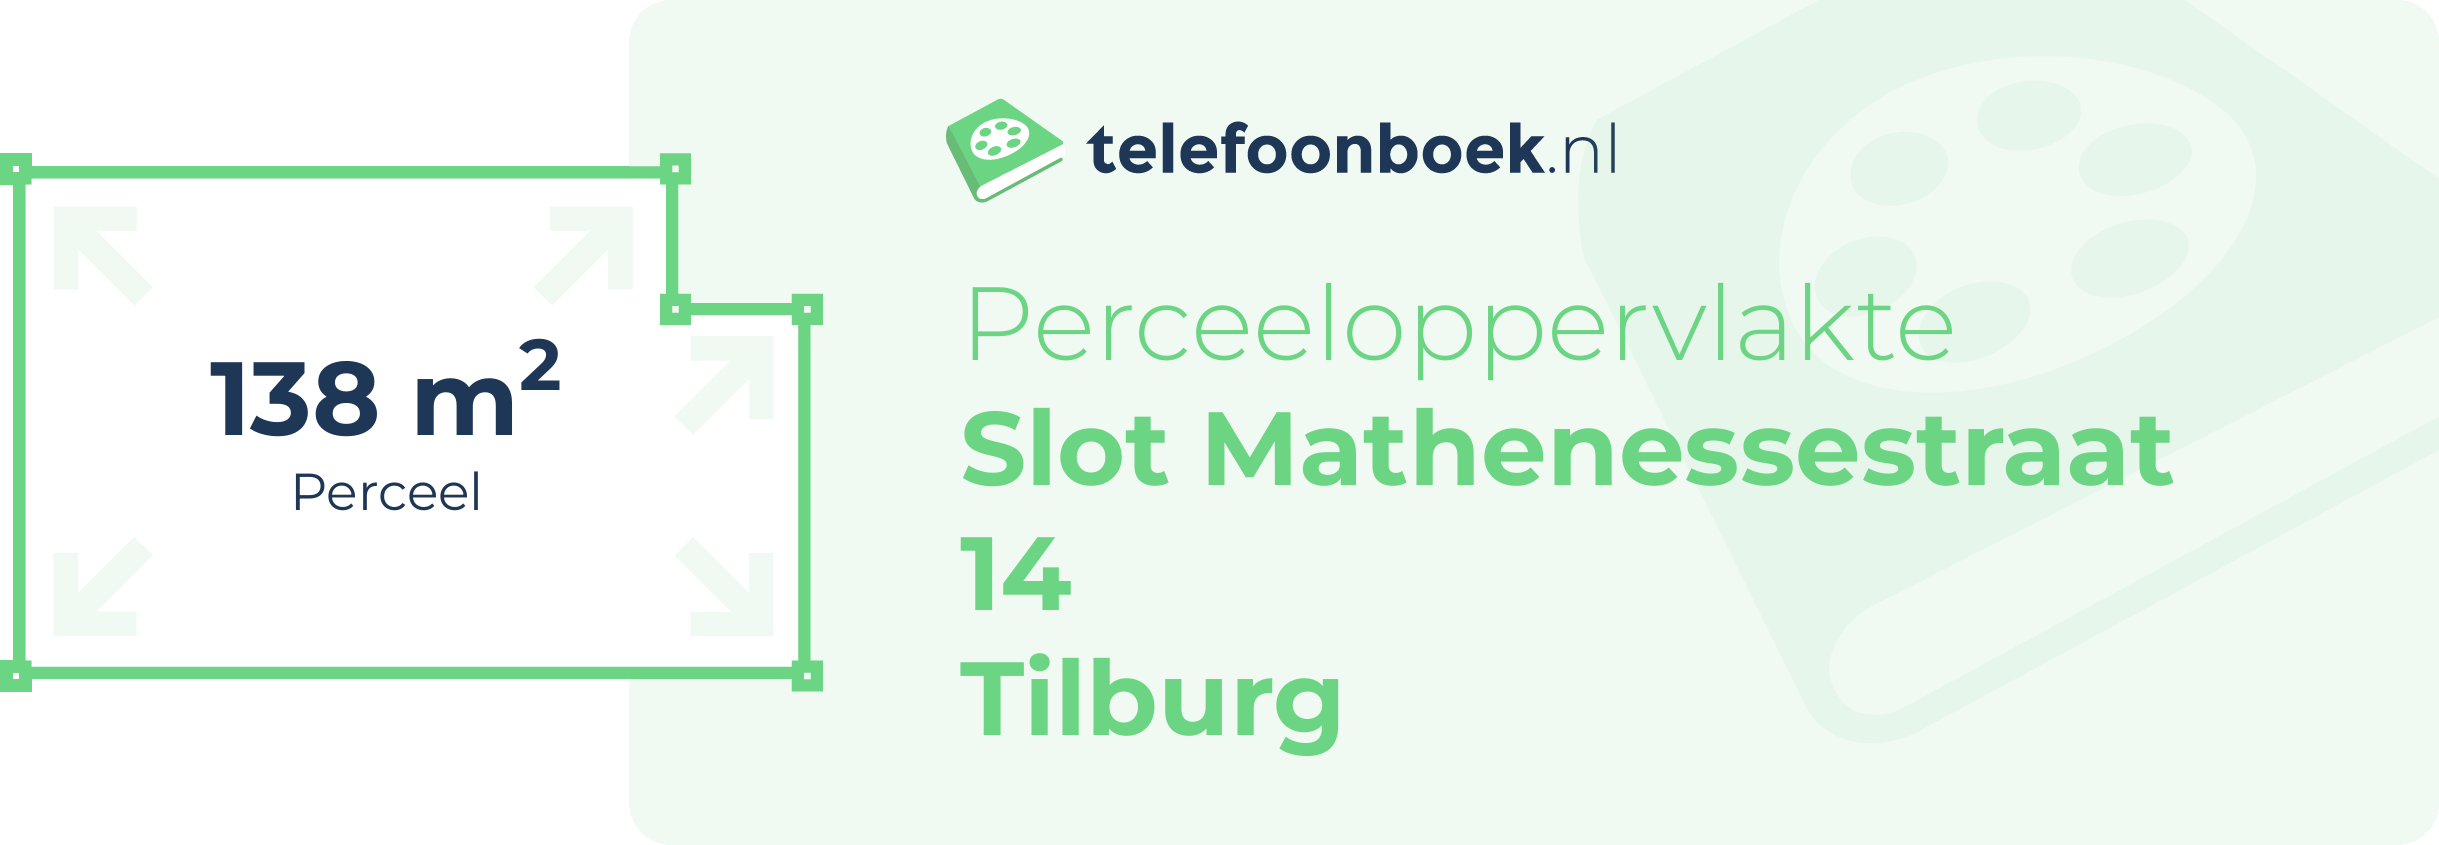 Perceeloppervlakte Slot Mathenessestraat 14 Tilburg